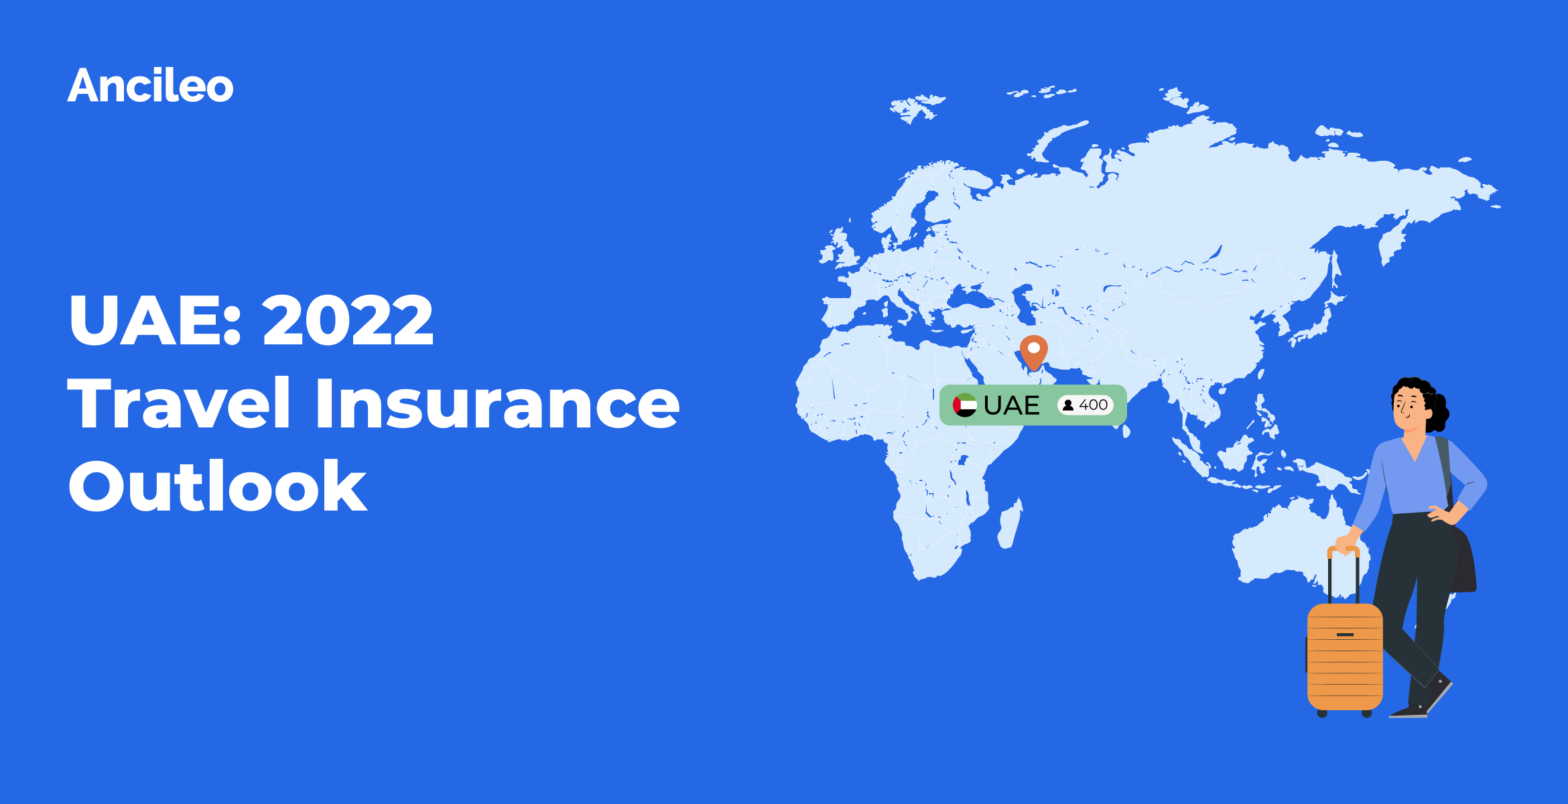 UAE: 2022 Travel Insurance Outlook